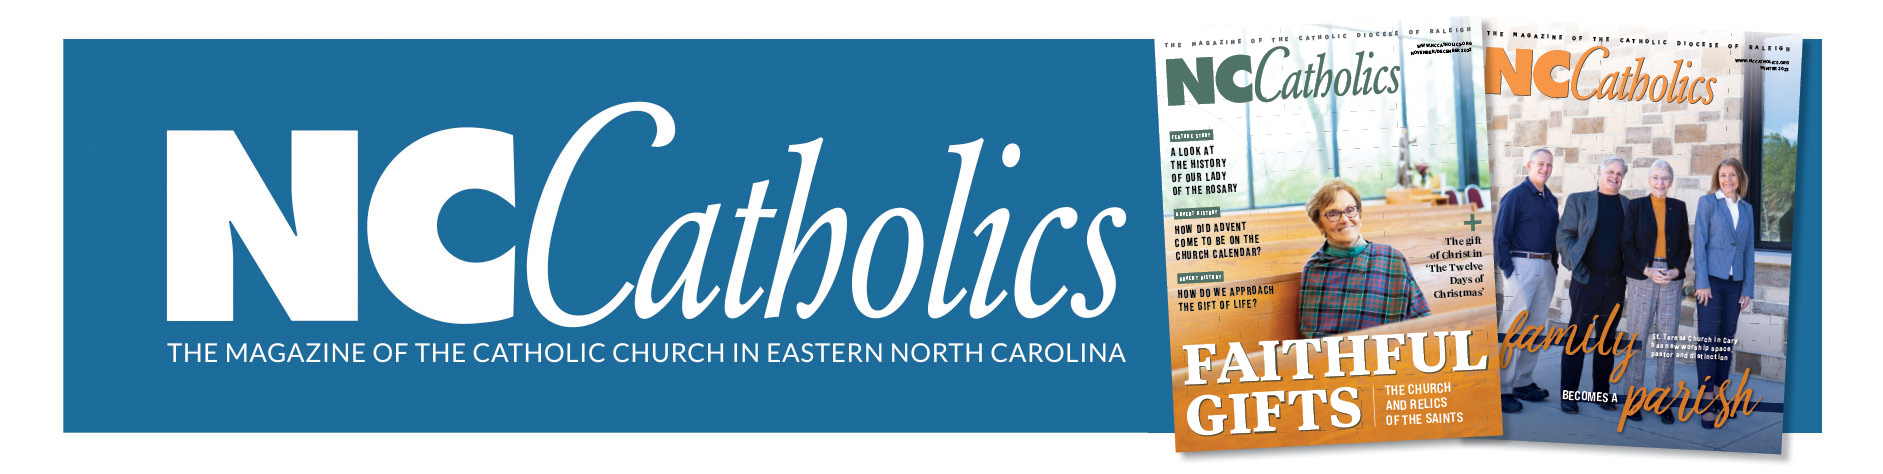 NC Catholics Magazine